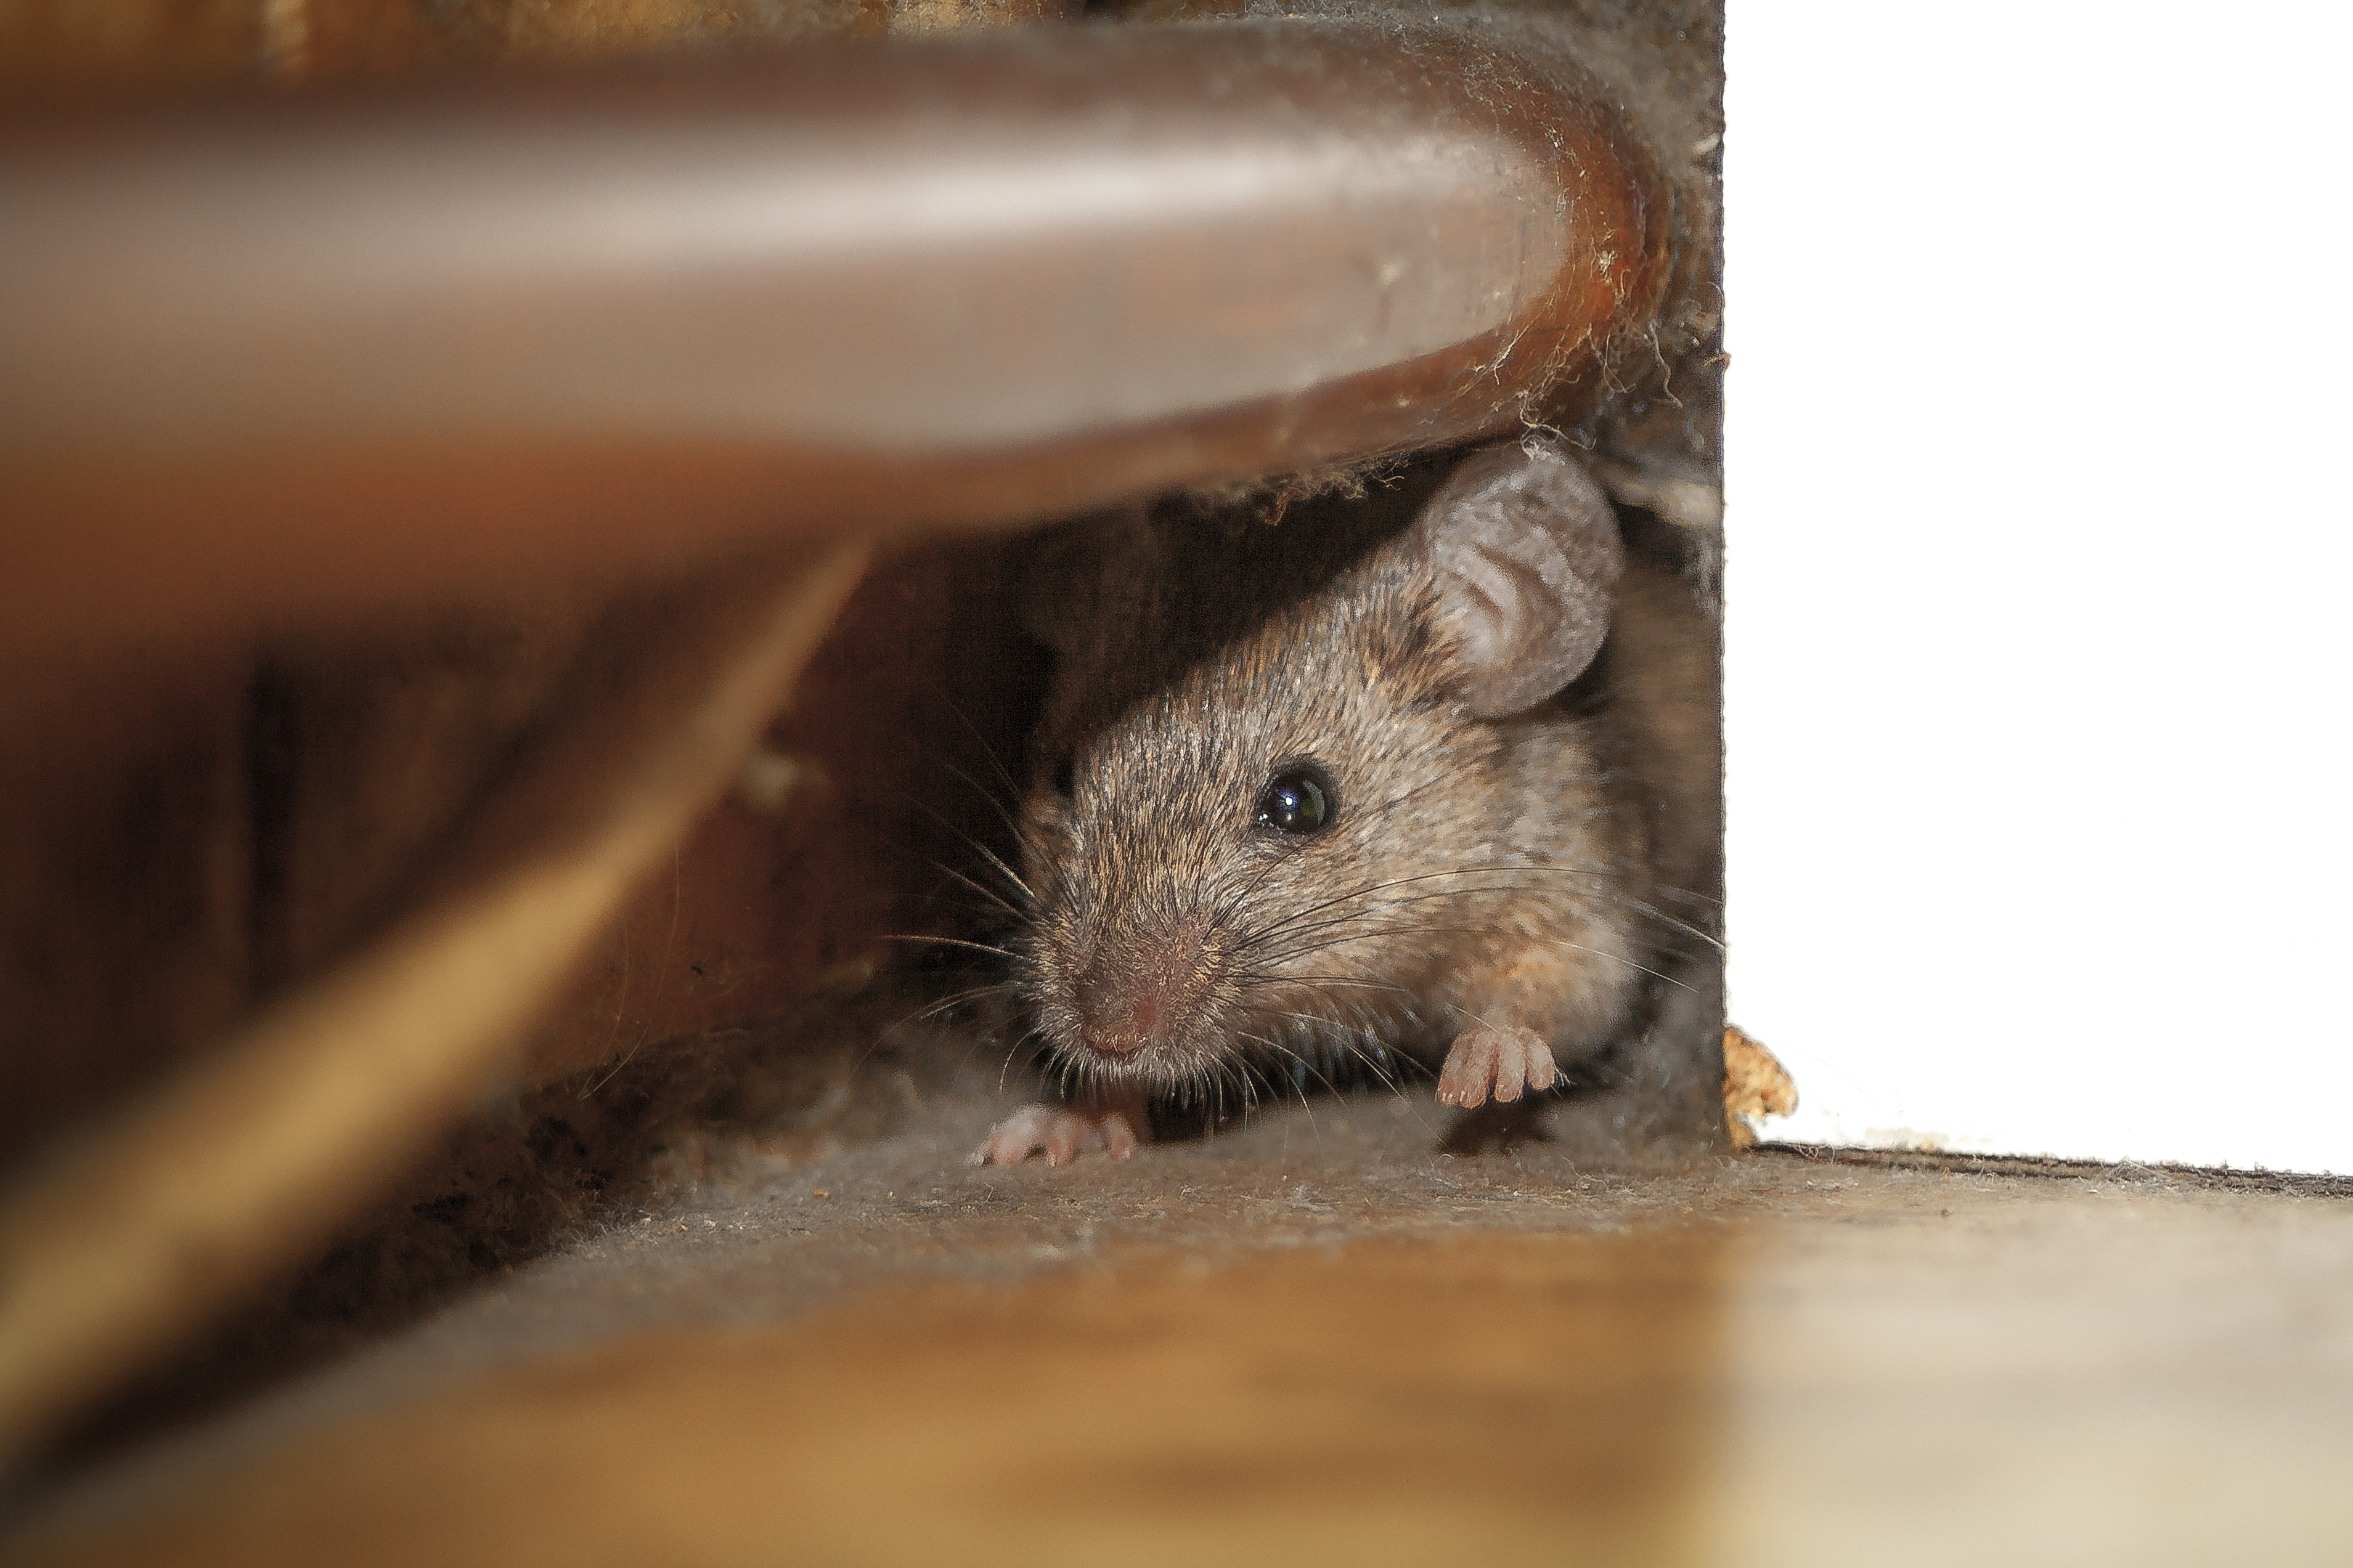 Truco para 'eliminar' los ratones en la casa con vinagre o canela